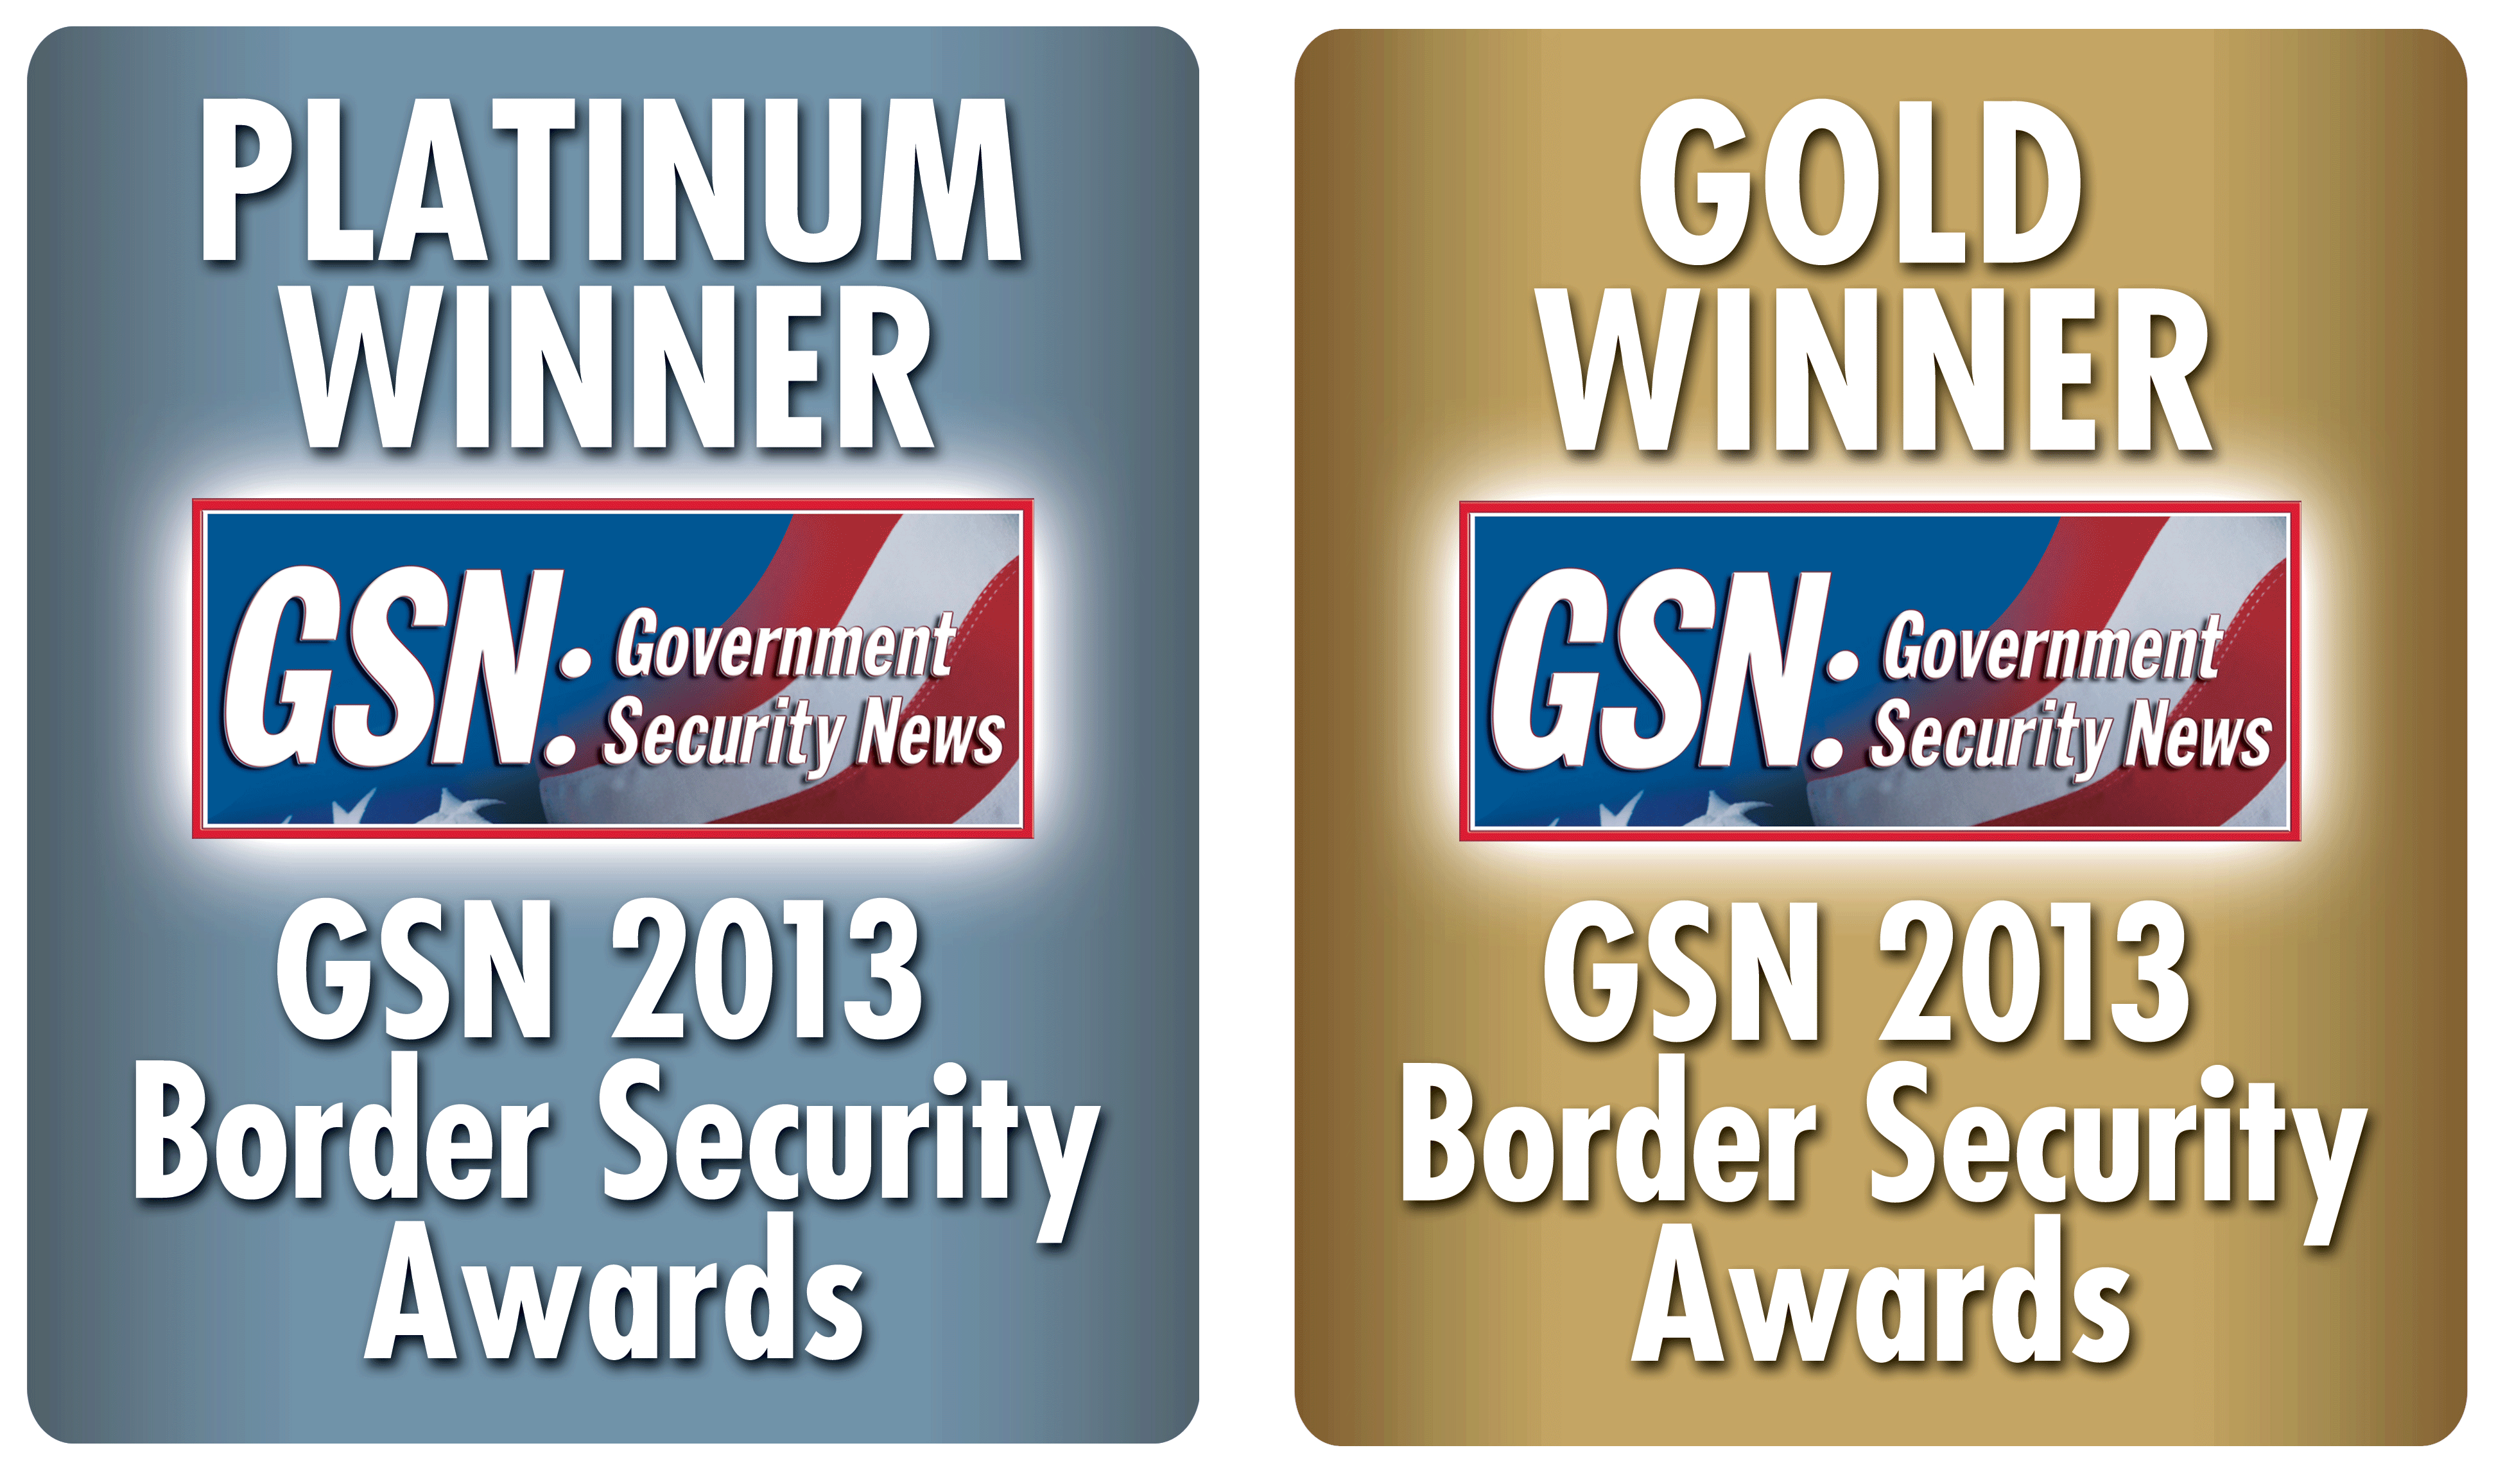 GSN 2013 Border Security Awards